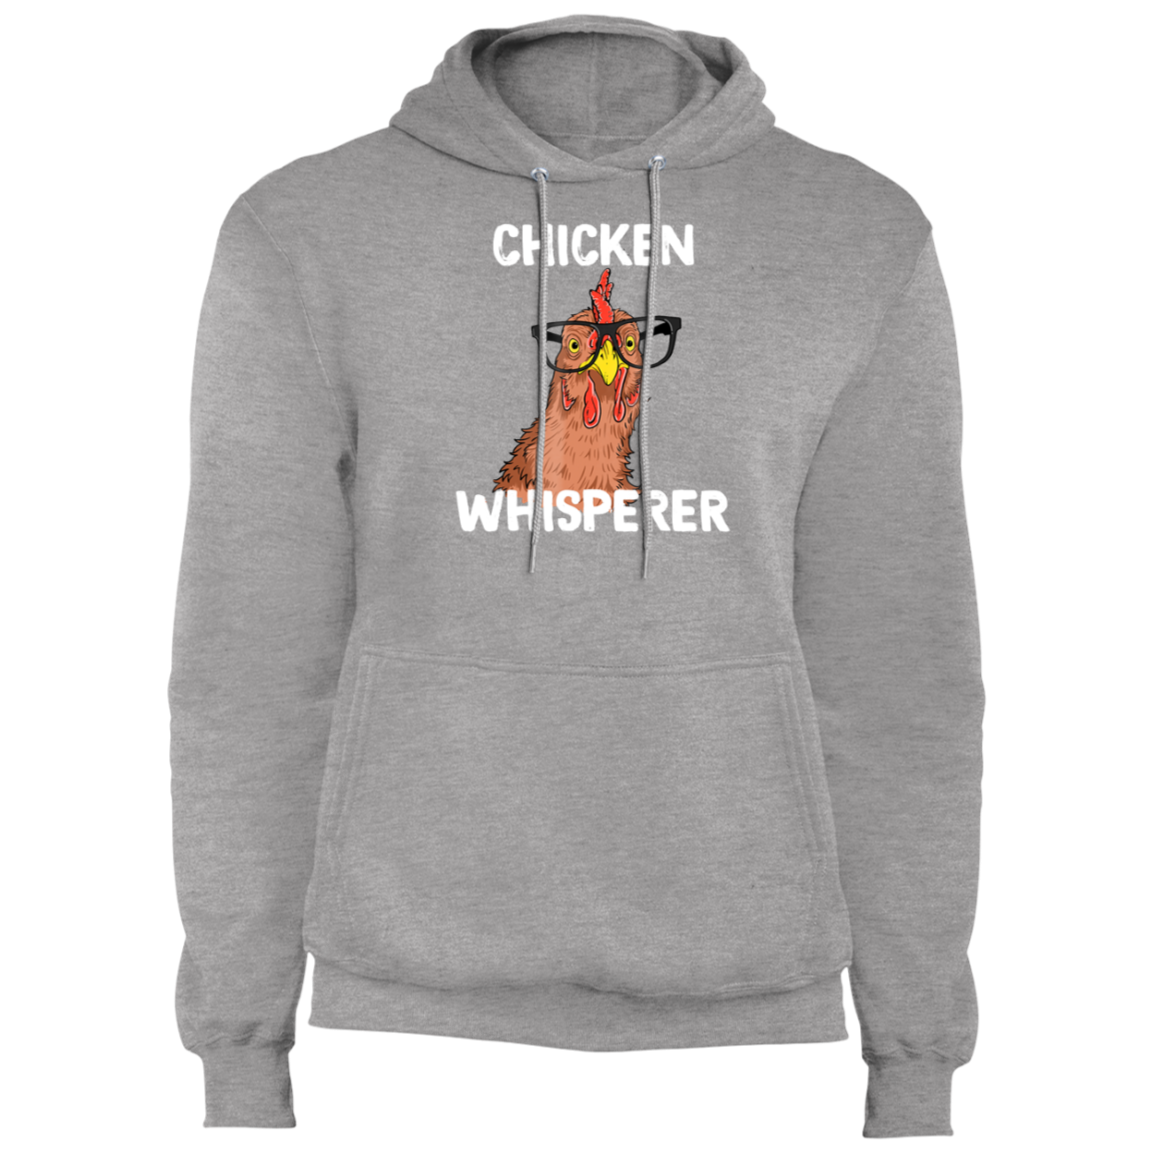 Chicken Whisperer Funny